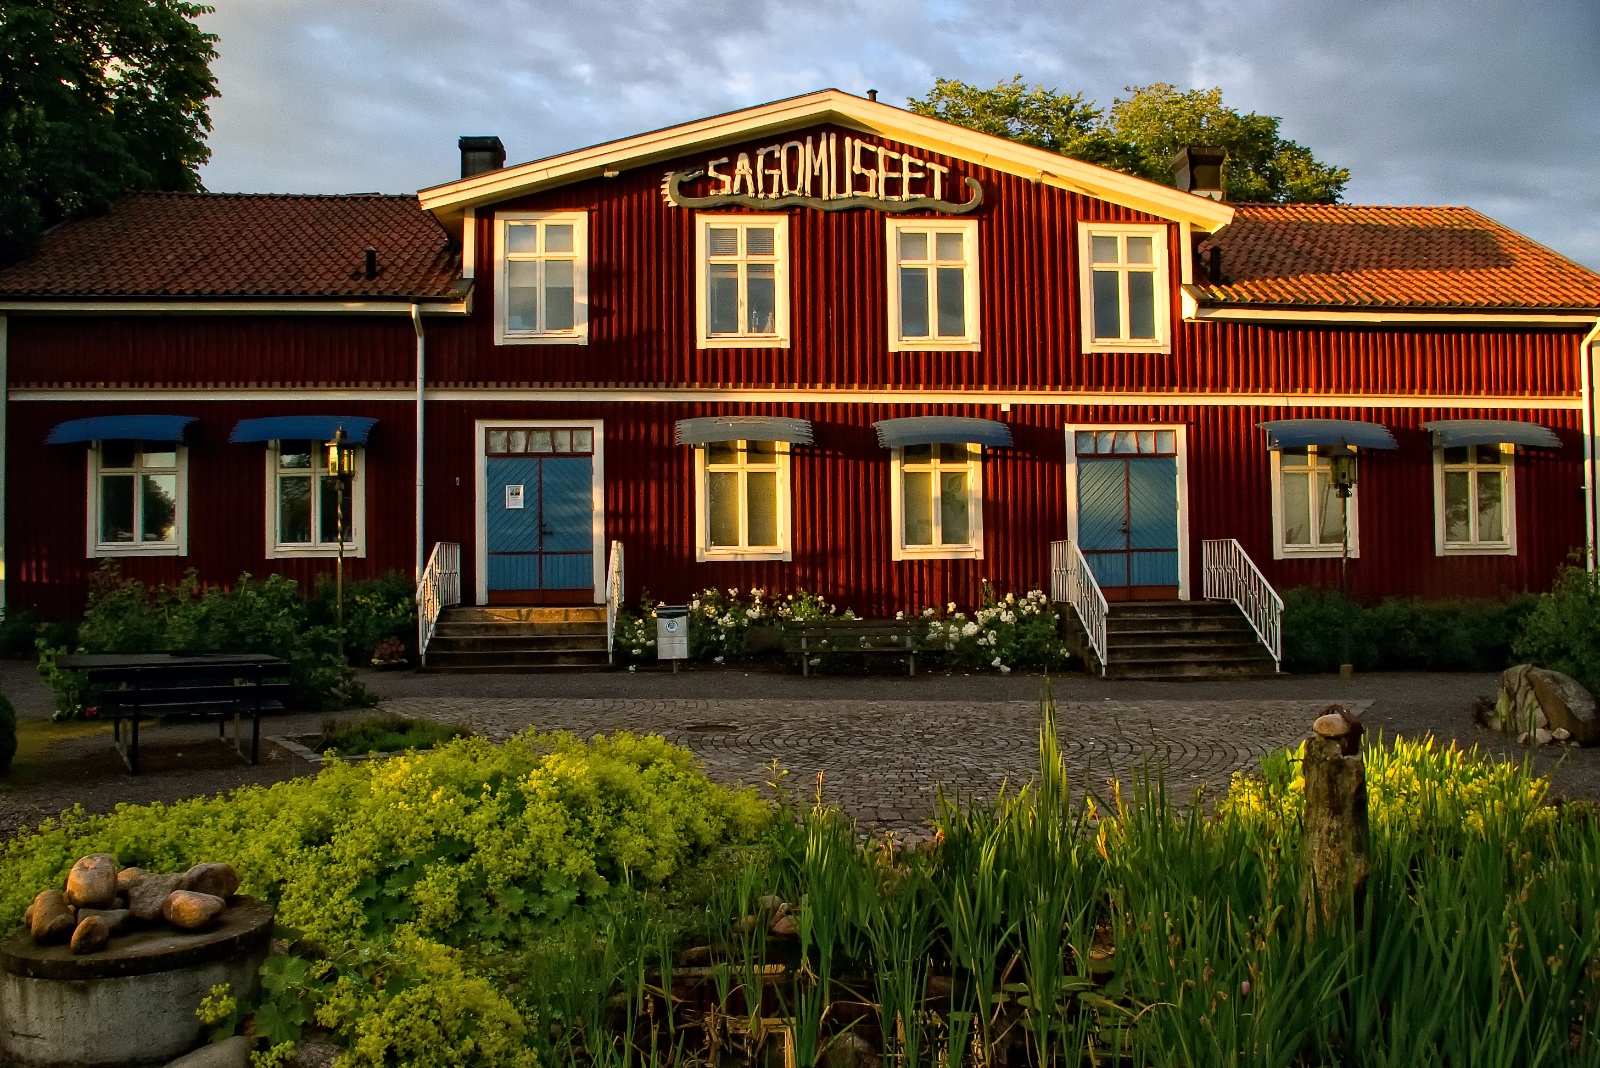 Sagomuseet Ljungby: i hjärtat av sagornas land